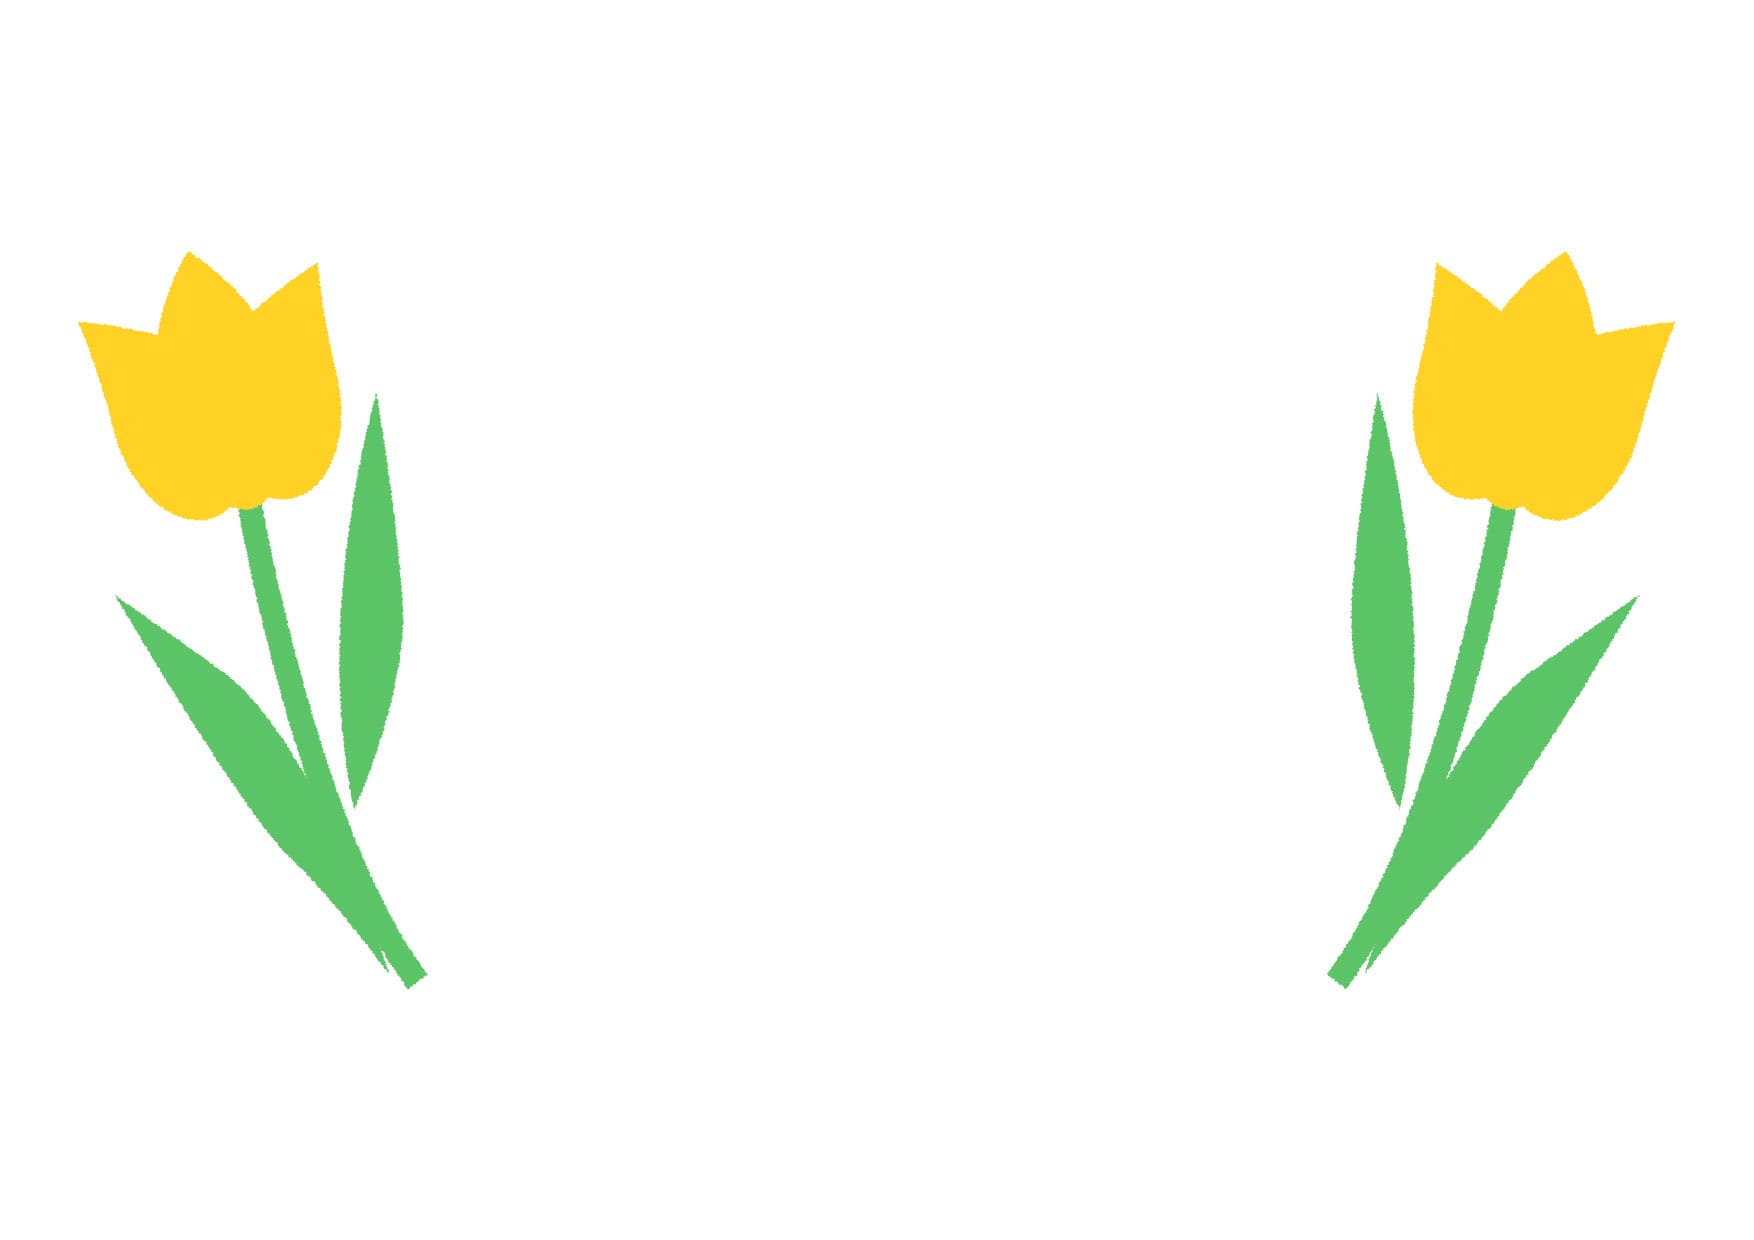 可愛いイラスト無料 チューリップ 黄色 背景 Free Illustration Tulip Yellow Background 公式 イラスト 素材サイト イラストダウンロード